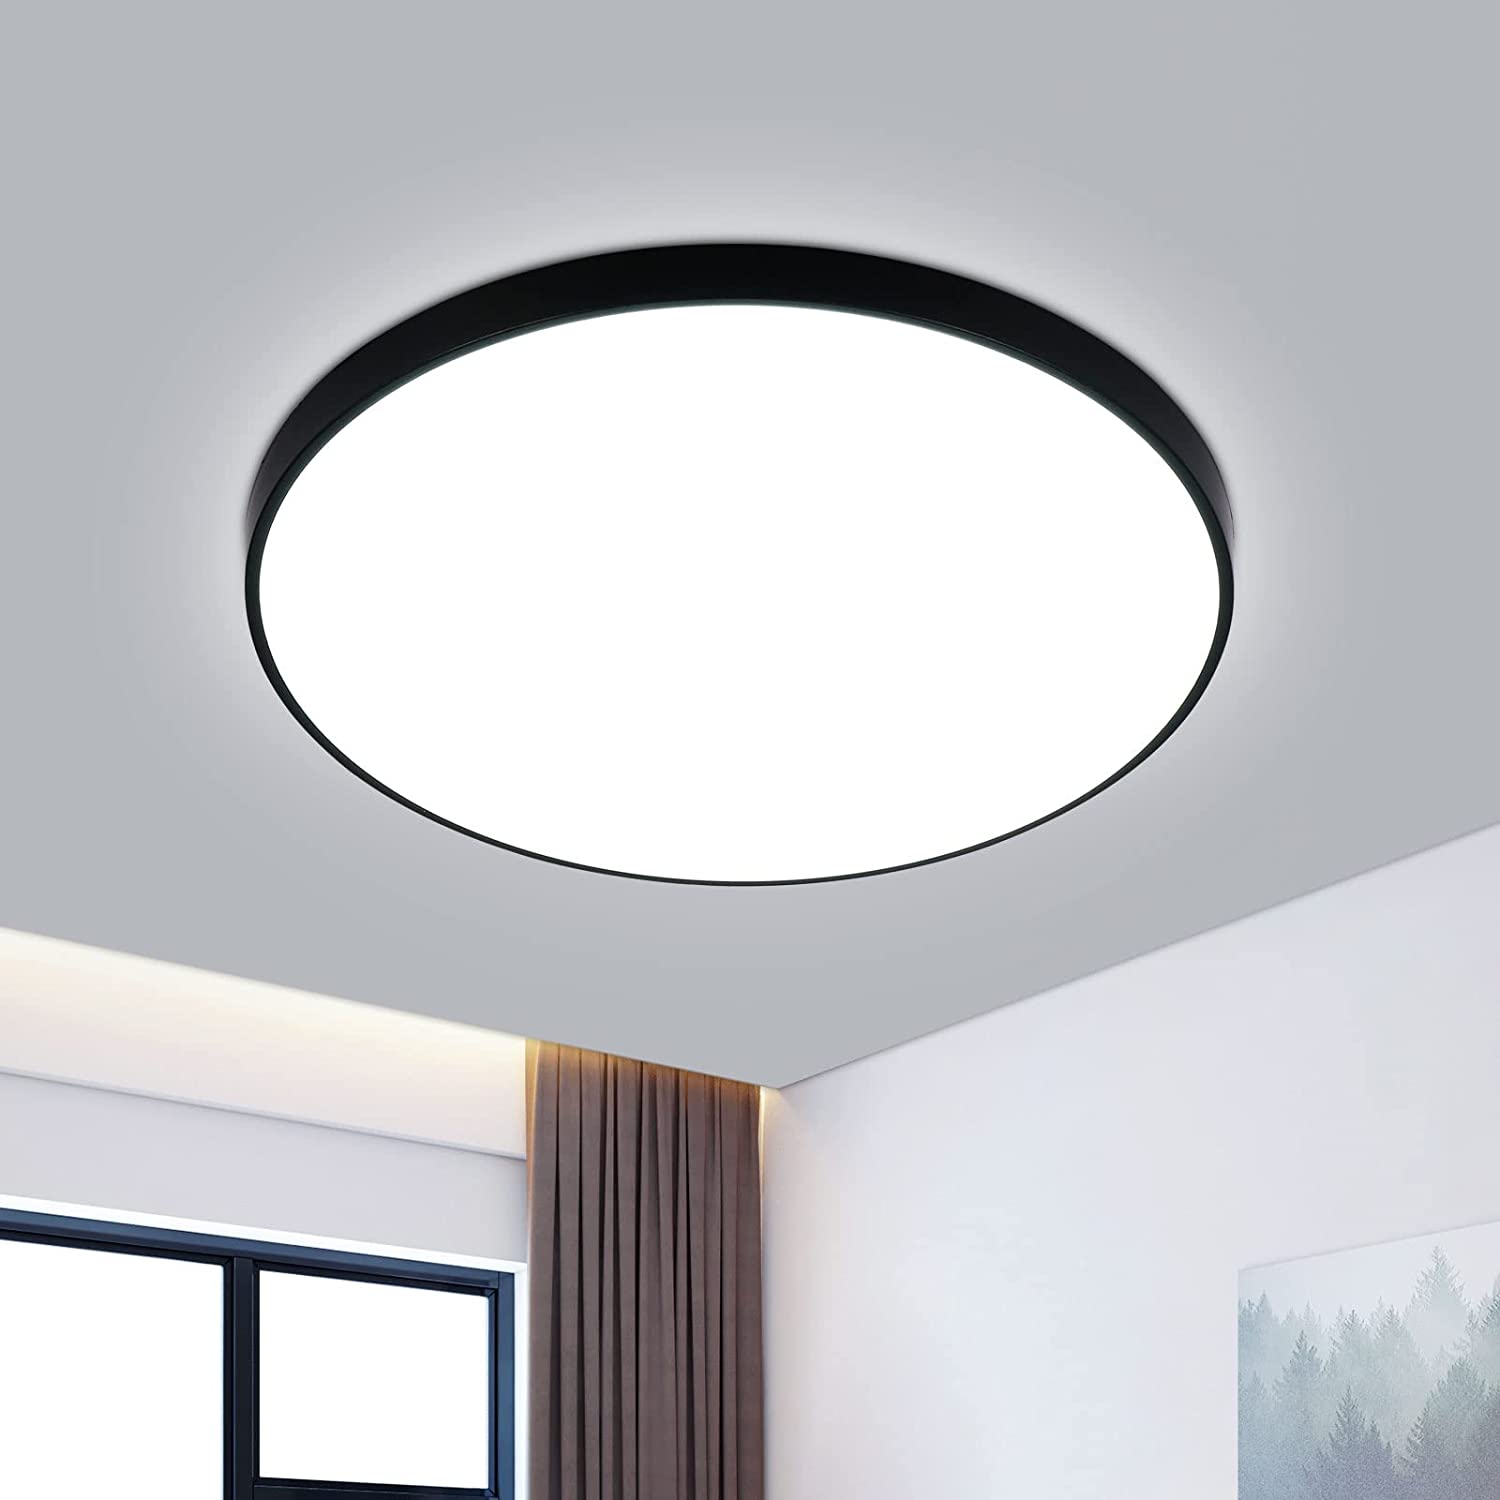 Plafonnier LED 24W 2200LM Blanc Froid 5000K Éclairage de Plafond IP54 Lampe  Plafond Chambre Salle de Bain Salon Cuisine Intérieur D.23cm